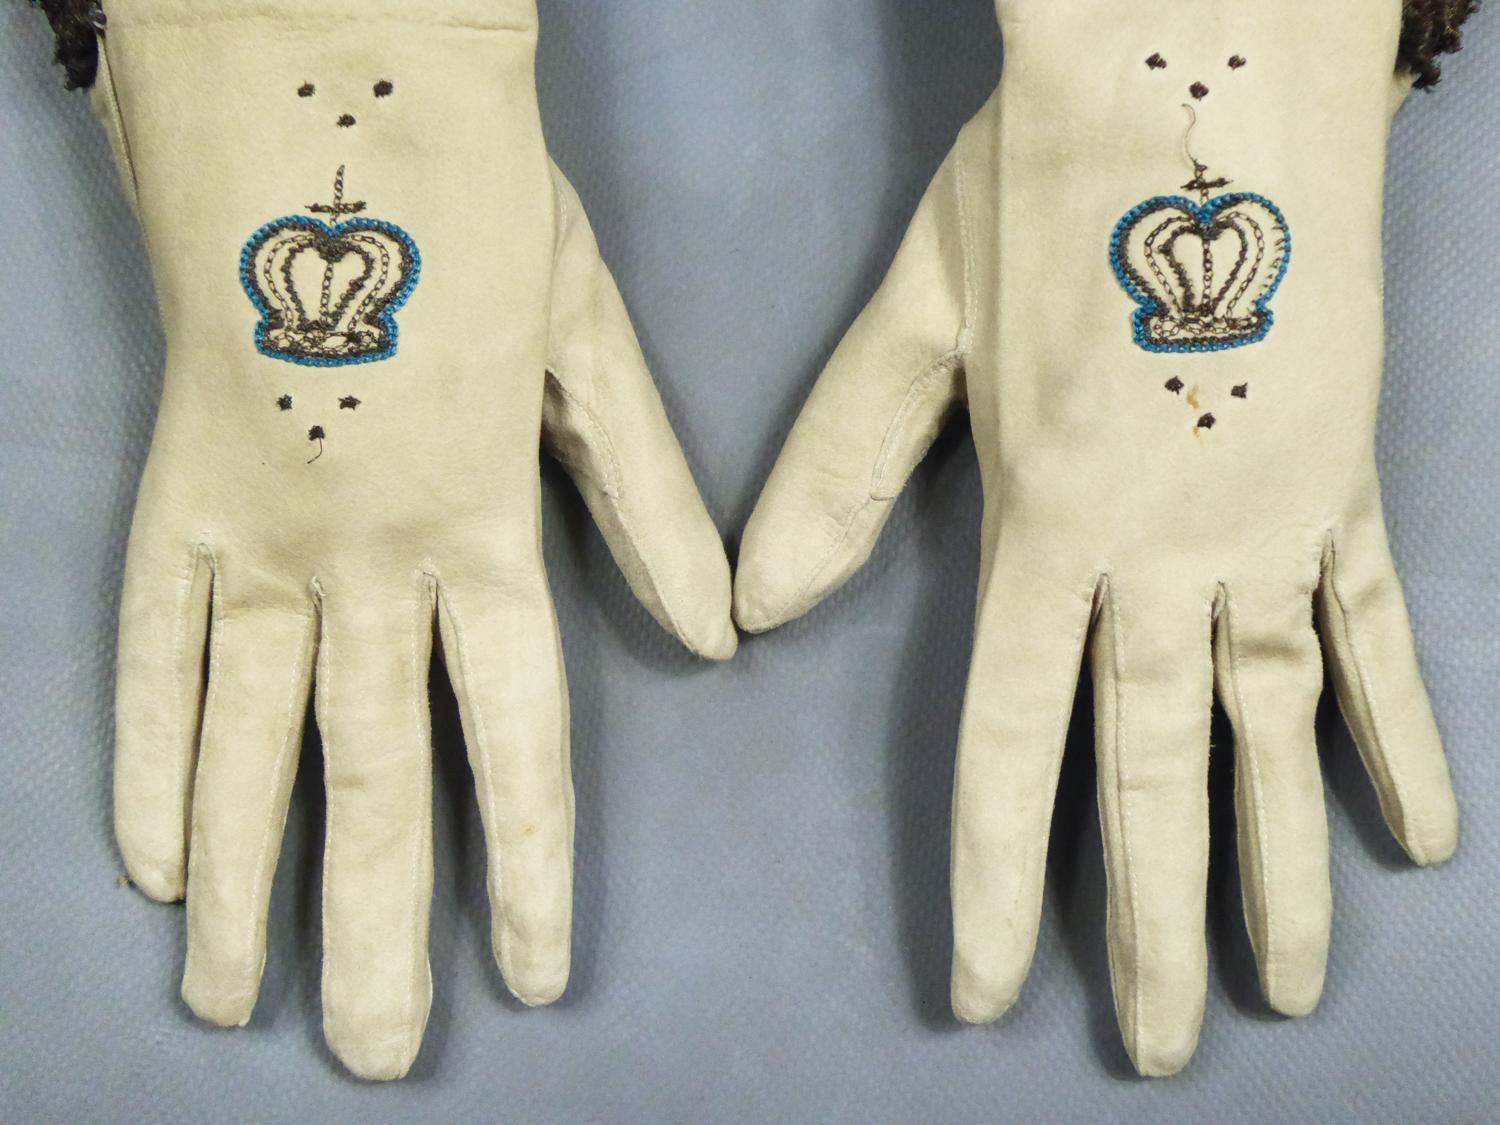 18th century gloves